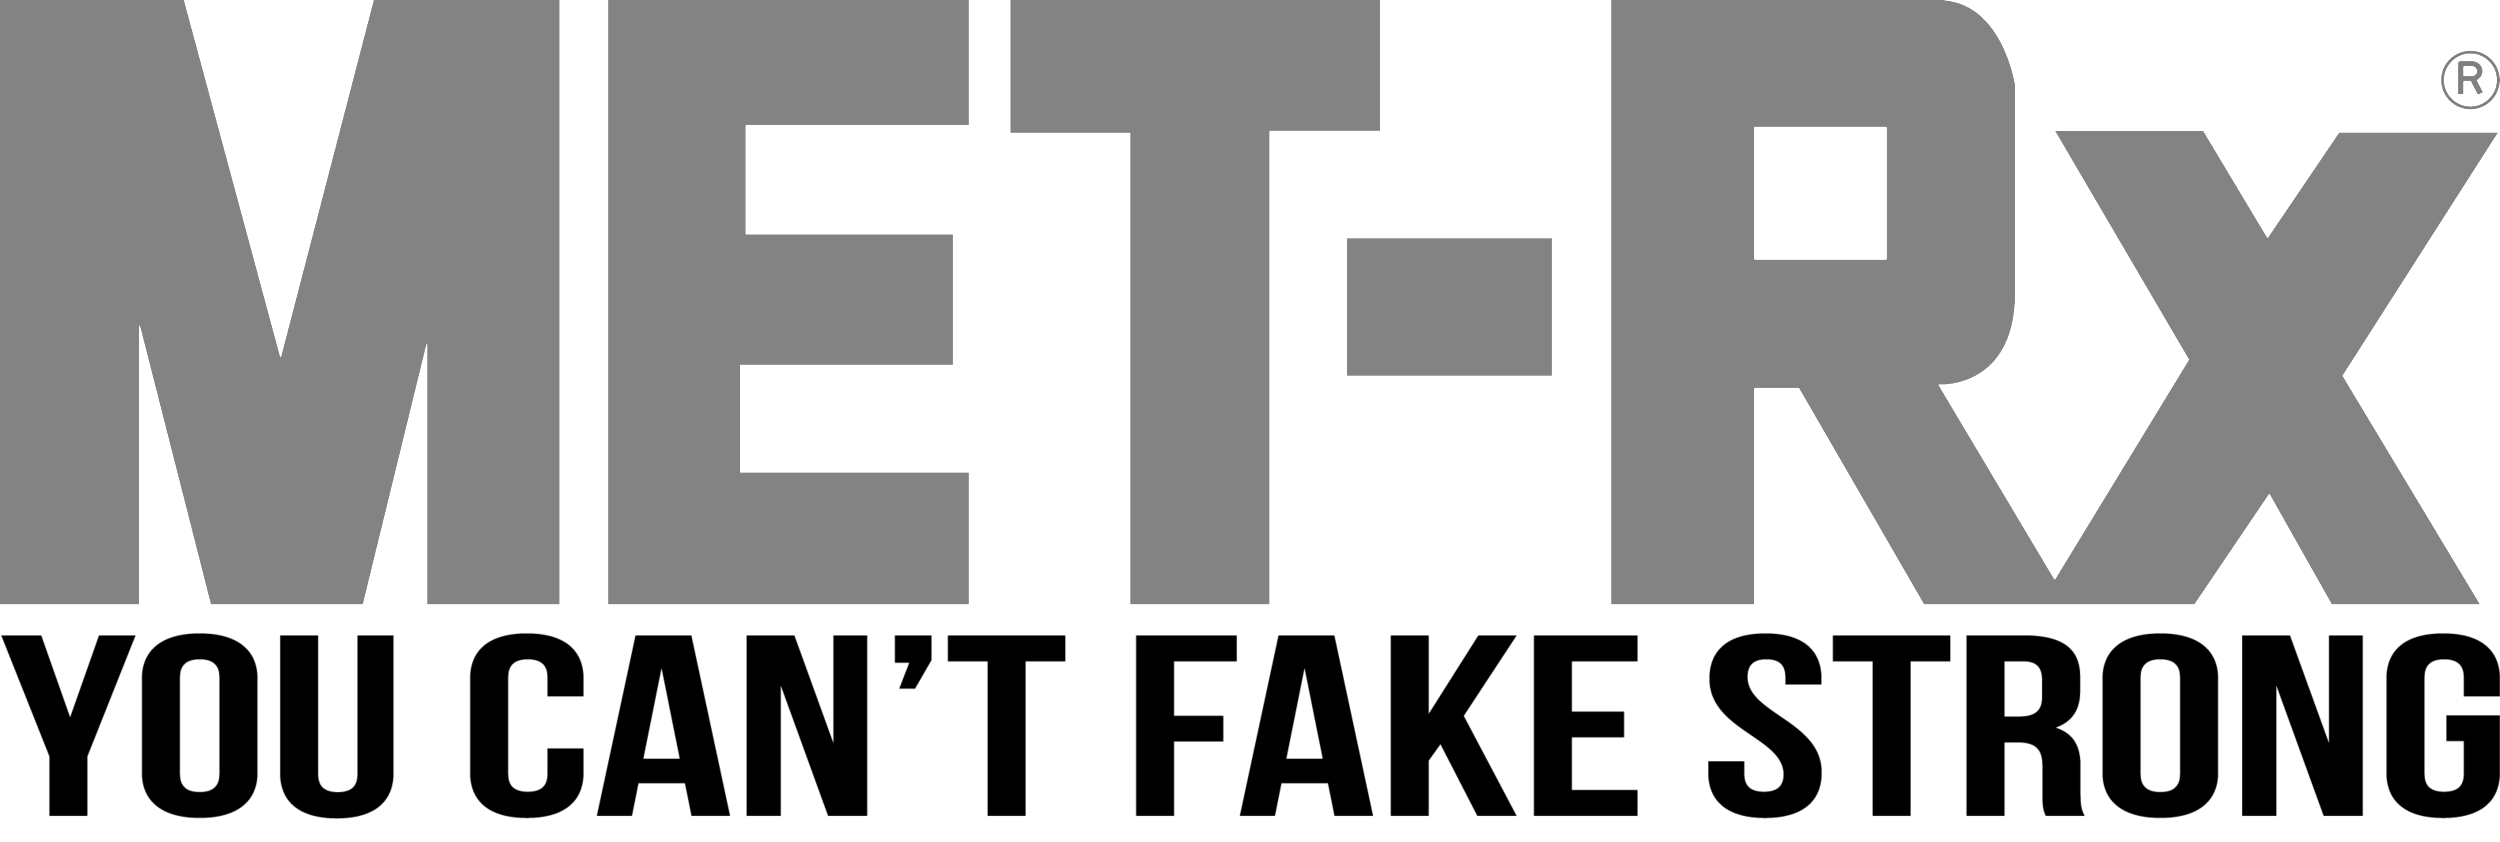 Metrx-Logo.png